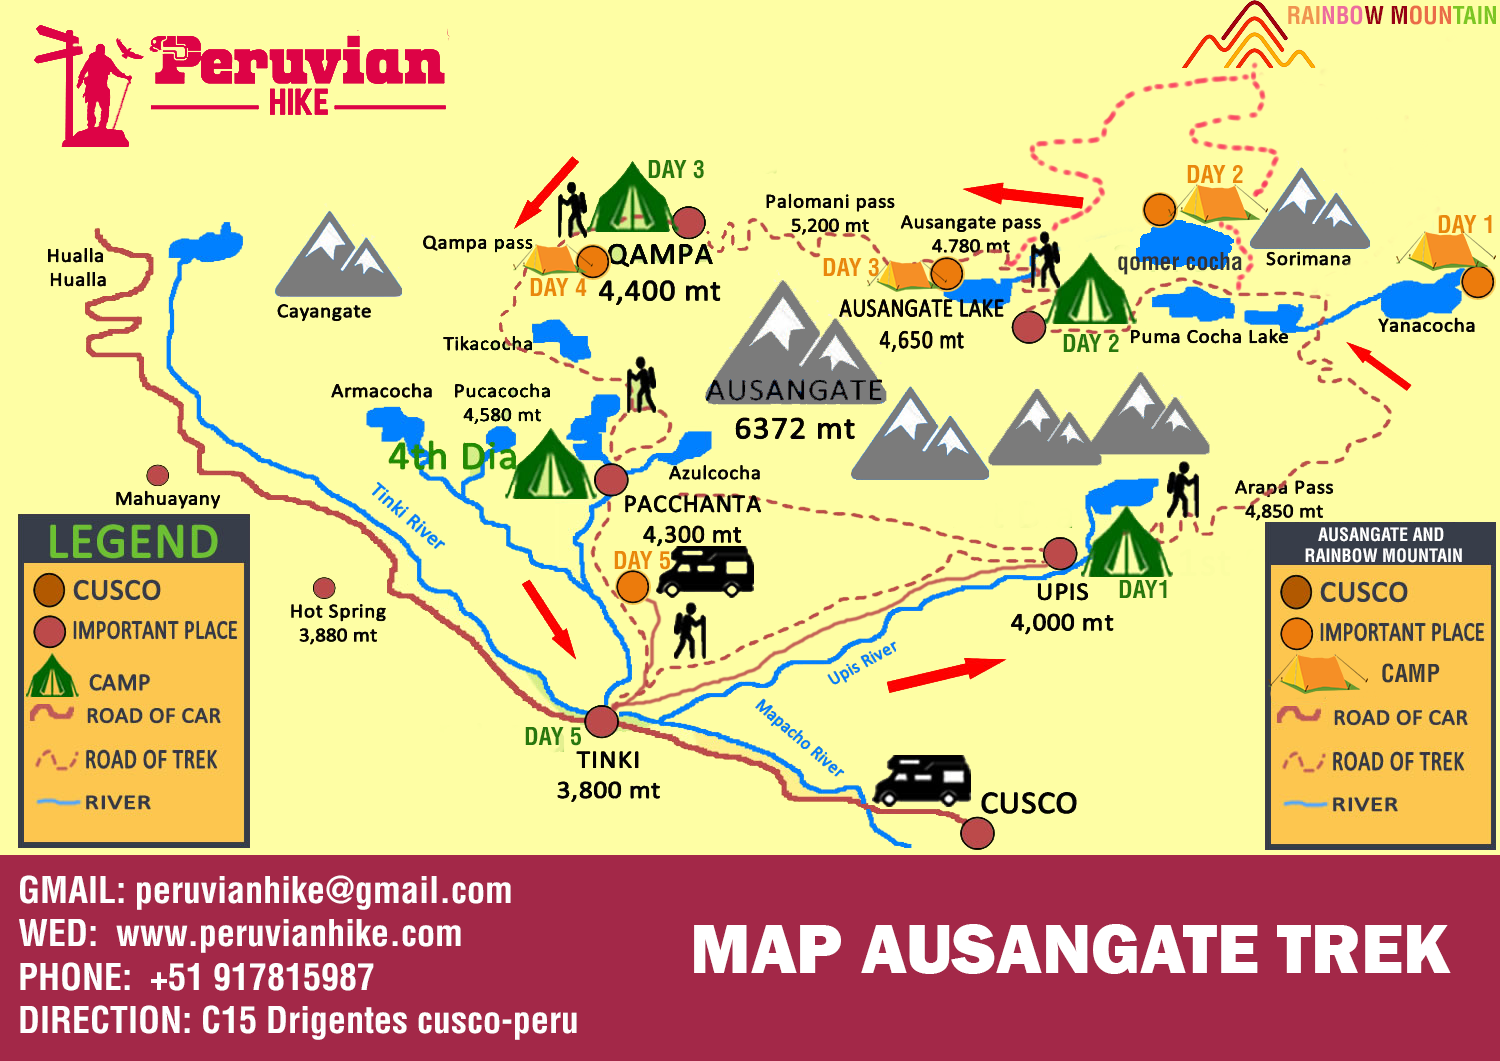 Ausangate Trek to Machu Picchu 5 Days Map Itinerary